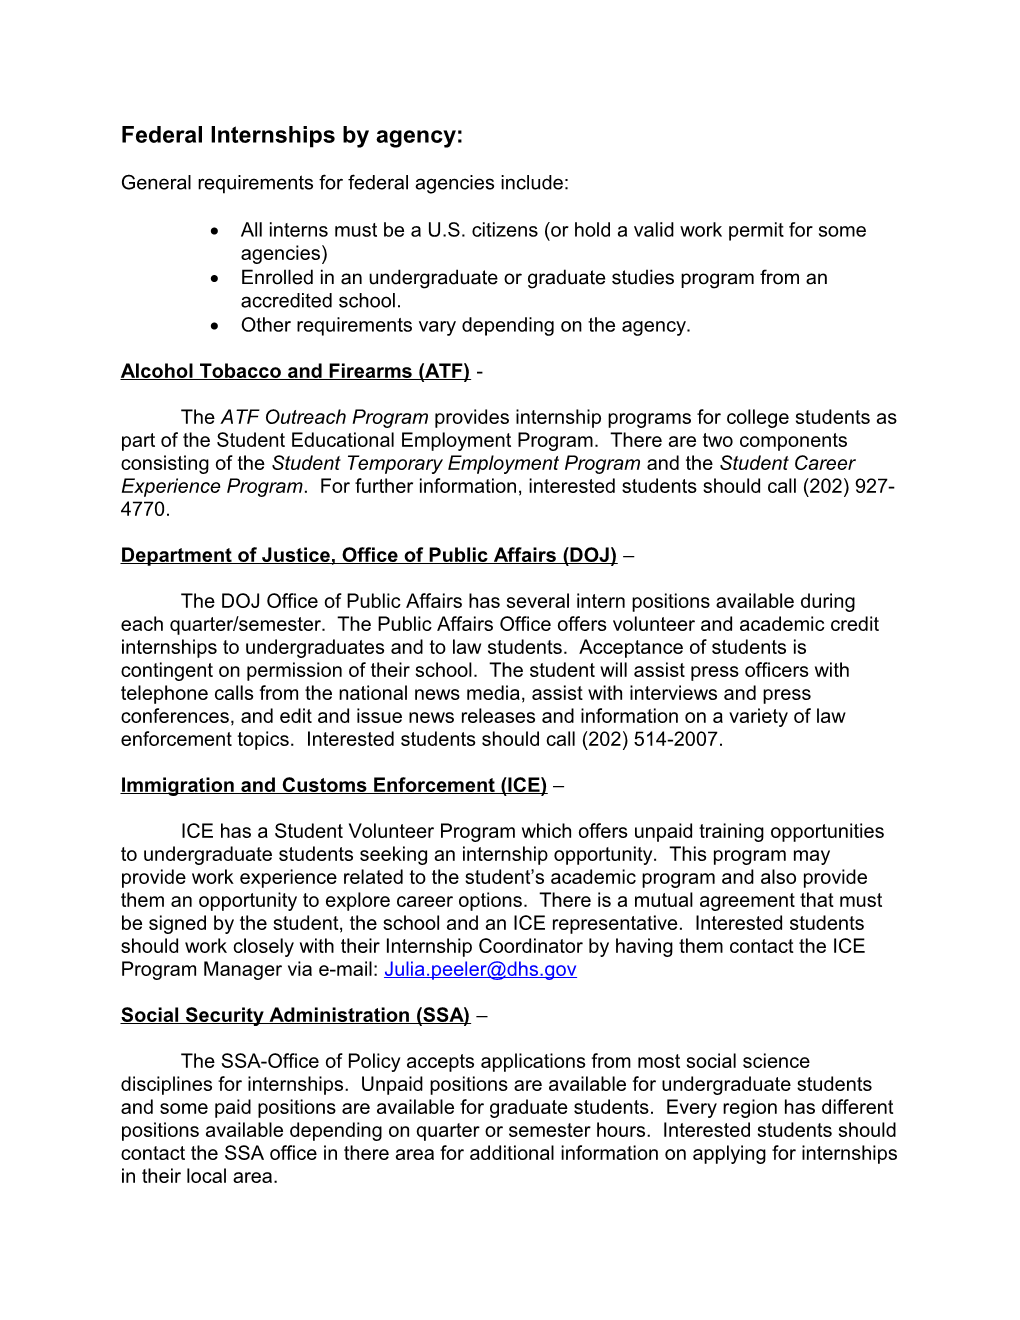 Federal Internship Summary by Agency